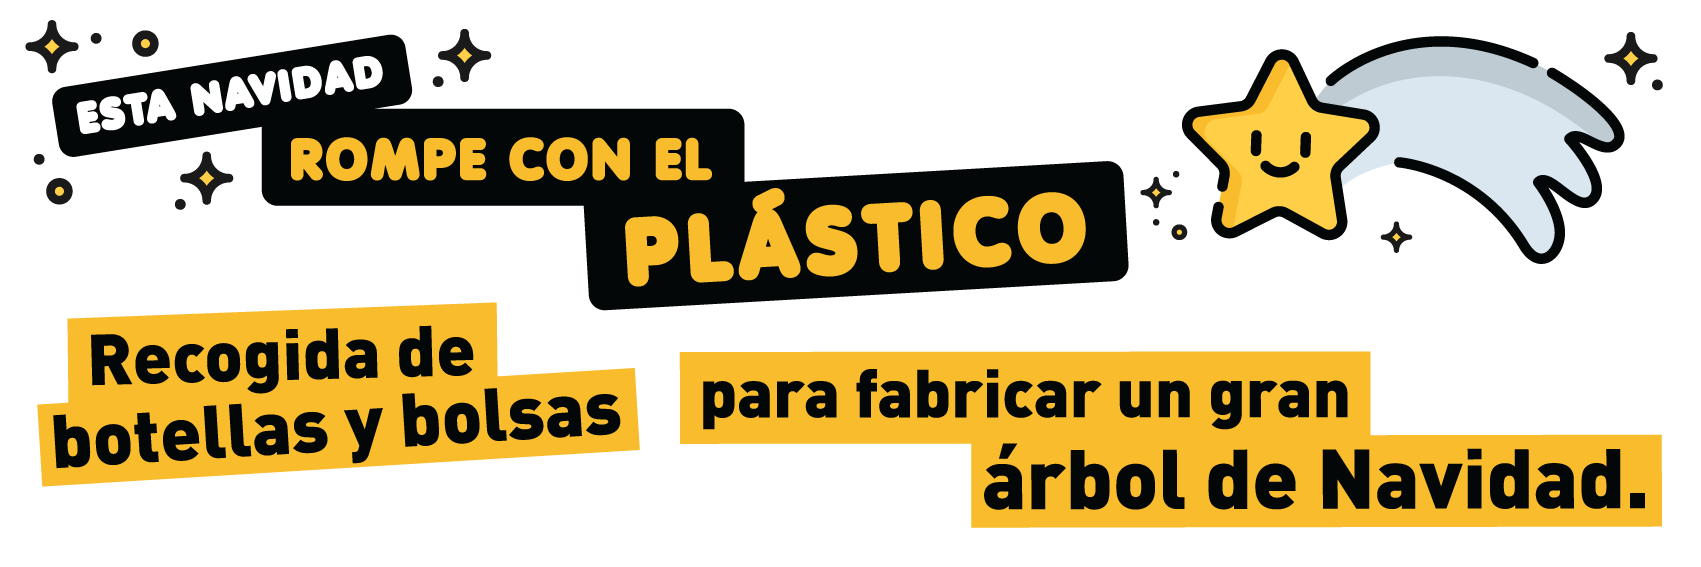 Campaña contra el plástico. Árbol de navidad 2018. Campus Sostenible. Cabecera